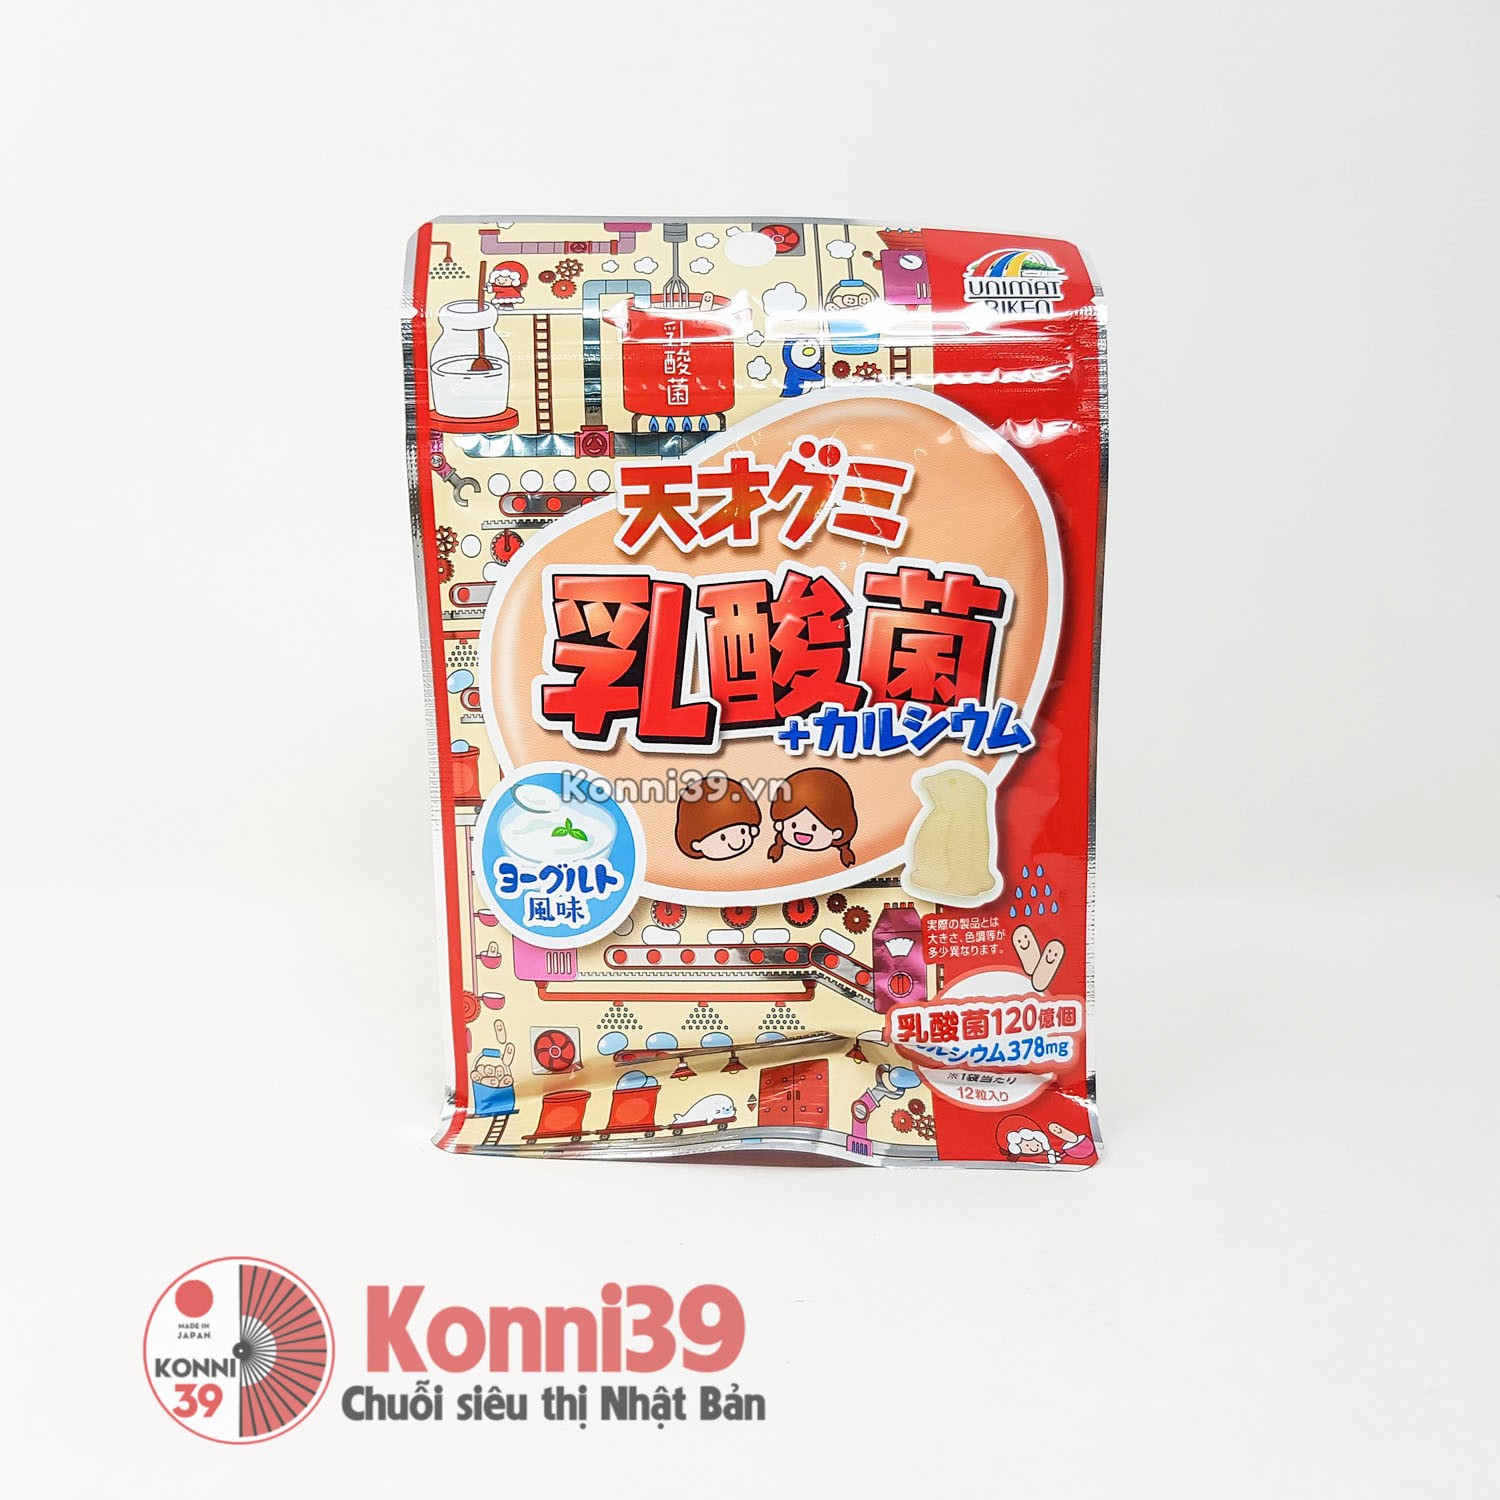 Kẹo dẻo Unimat Riken lợi khuẩn bổ sung canxi cho trẻ 42g - Vị sữa chua